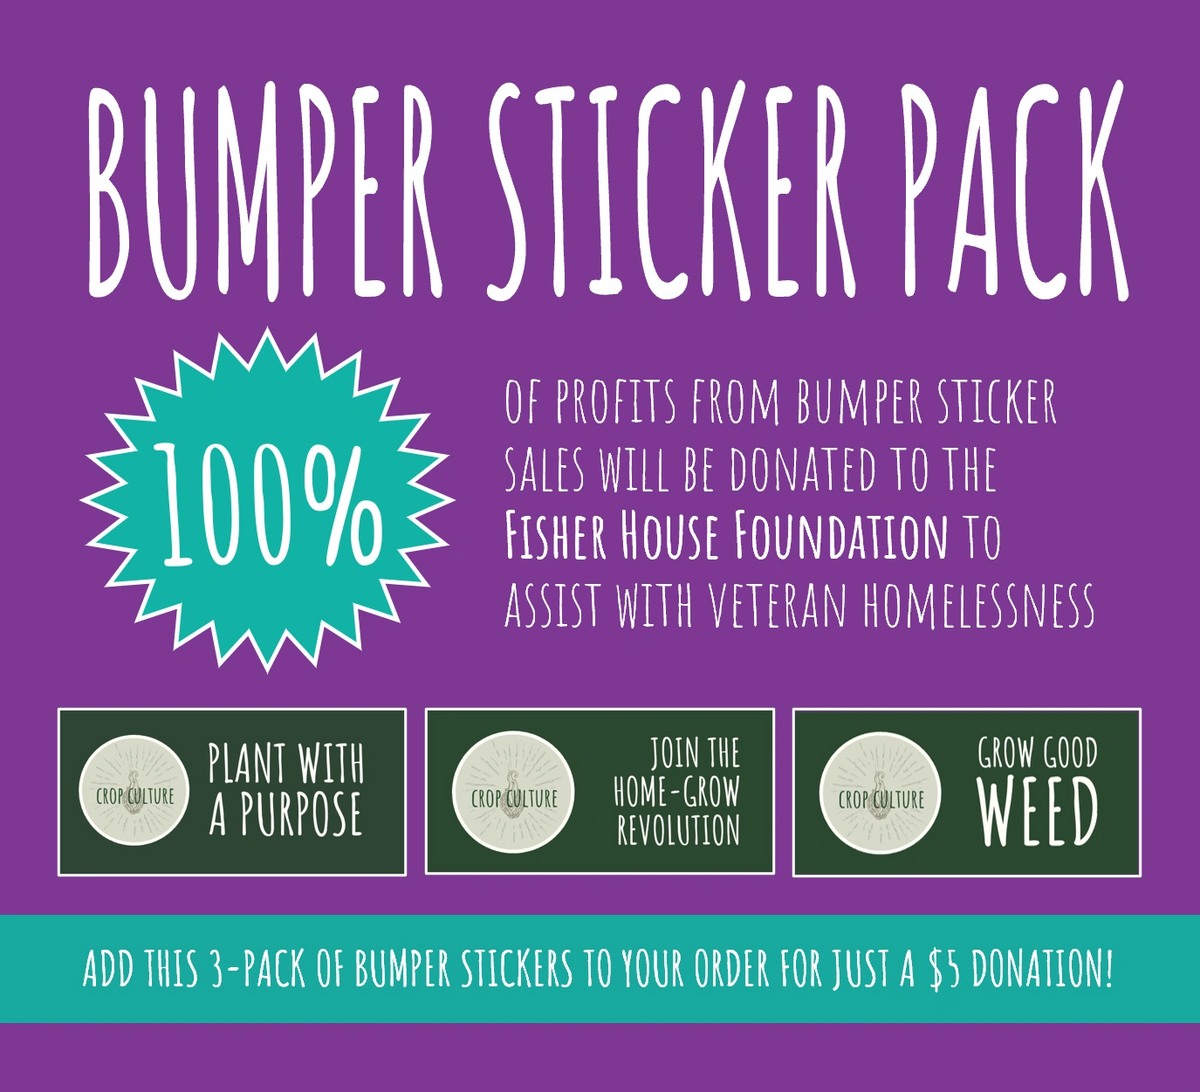 Crop Culture Bumper Sticker 3-Pack